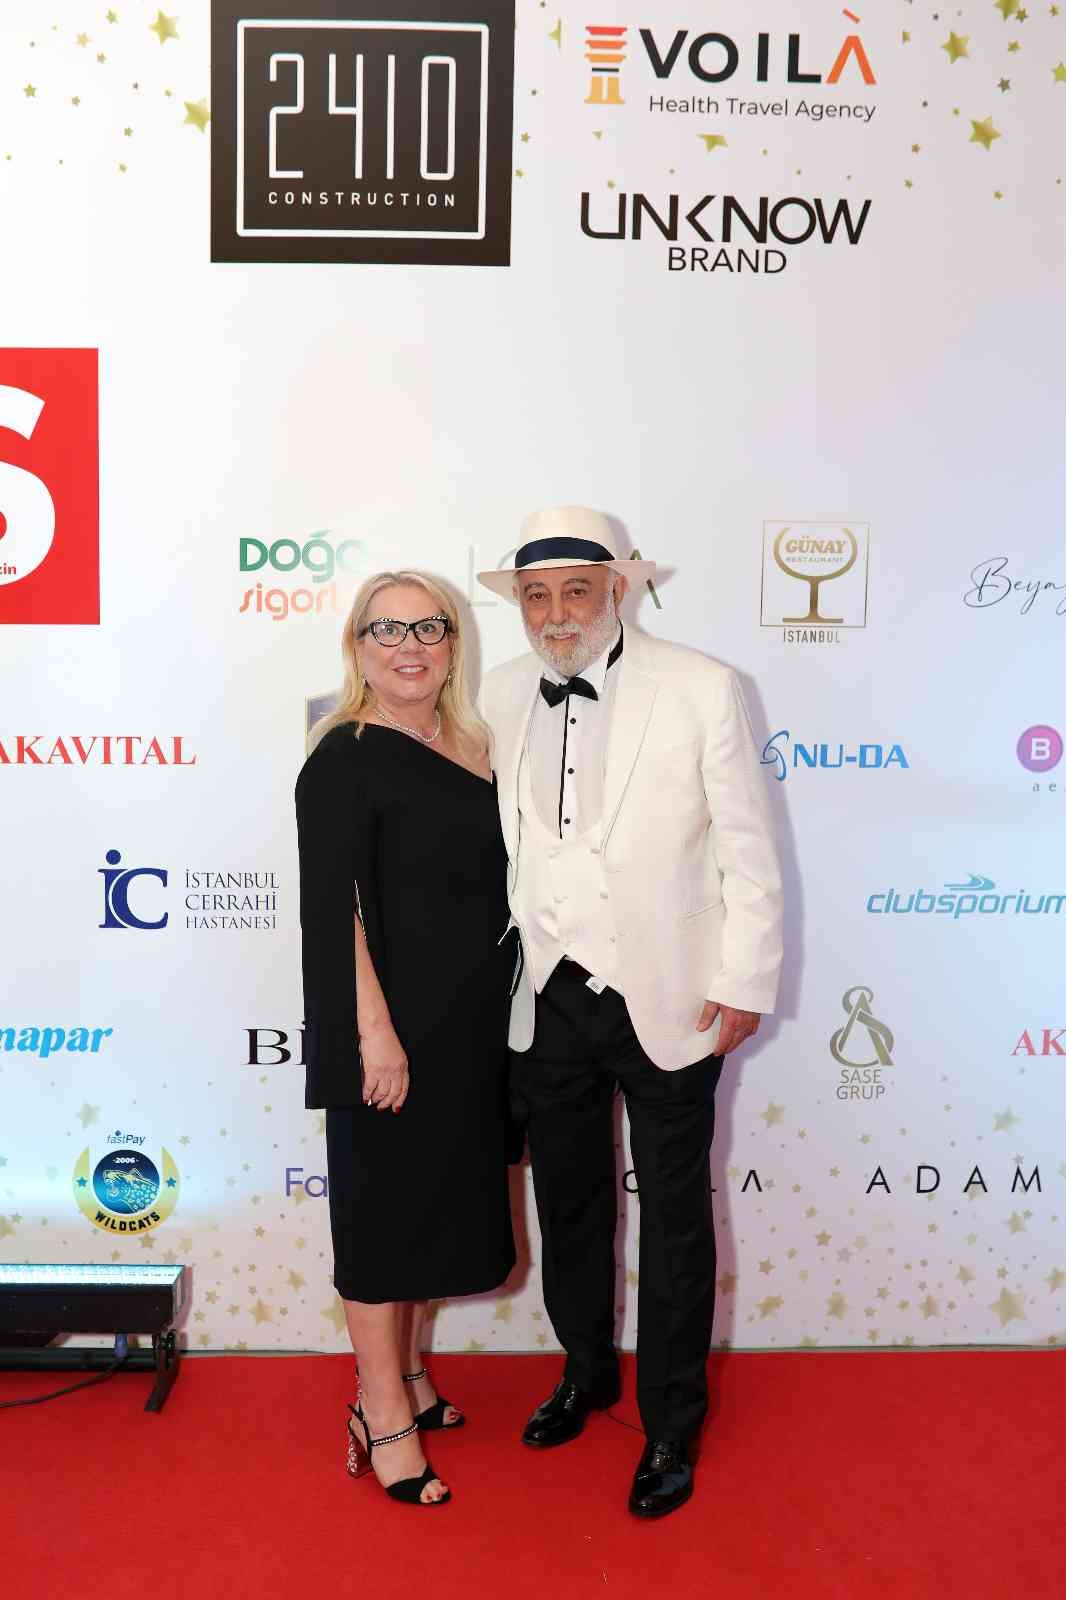 Klass Magazin Dergisi, 18. yılını Klass Ödülleri gala seremonisi ile kutladı. 50 farklı kategoride sektörlerinin en başarılı isimlerinin ...